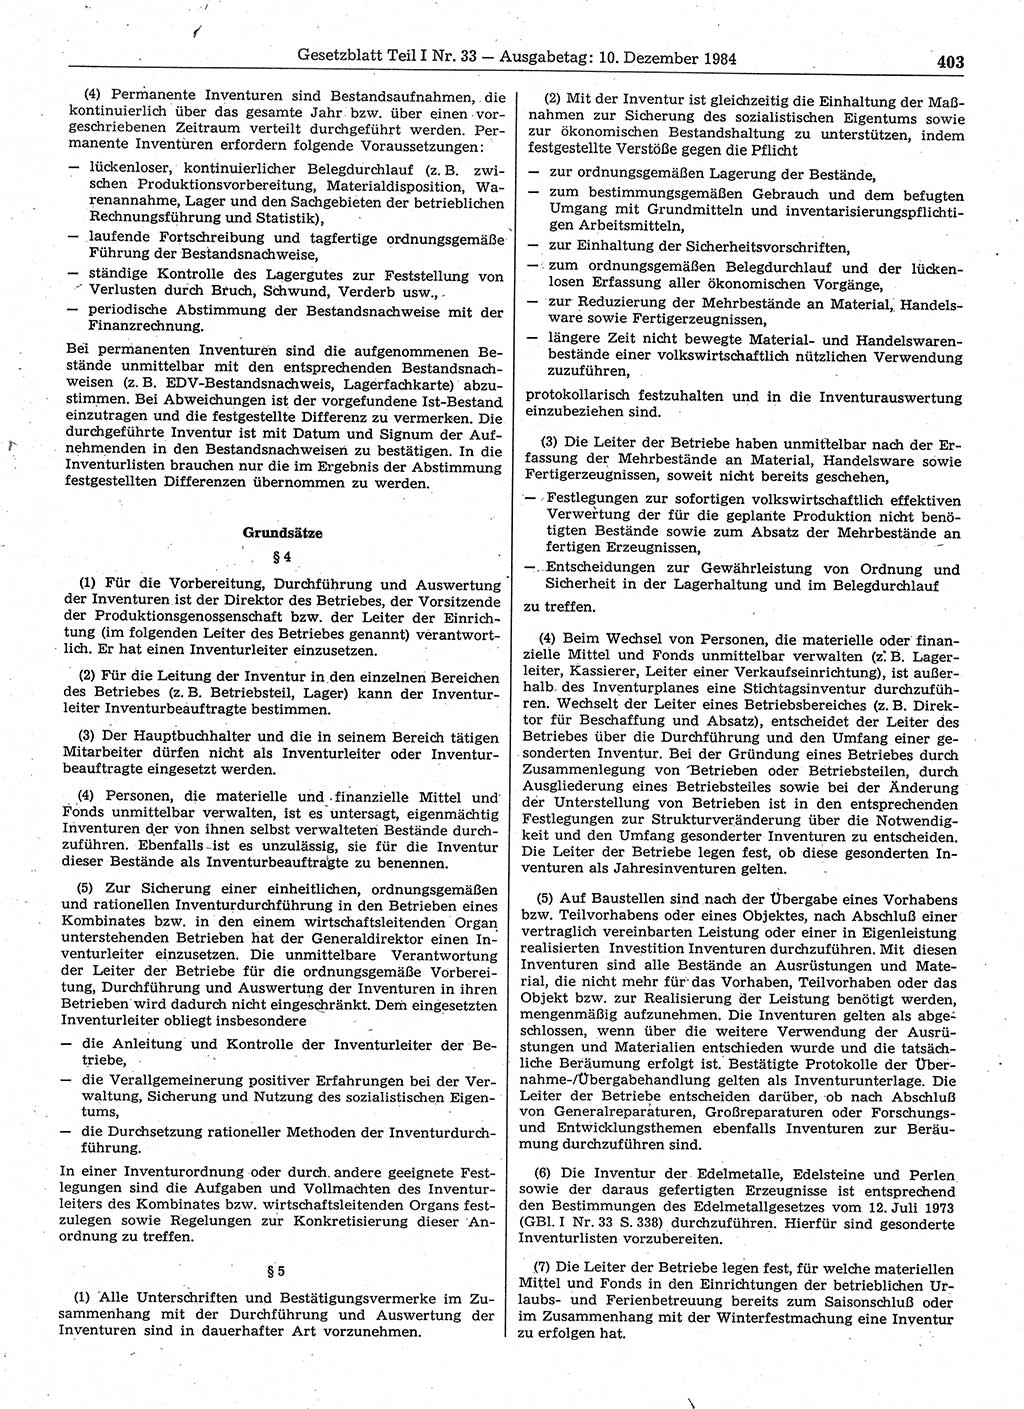 Gesetzblatt (GBl.) der Deutschen Demokratischen Republik (DDR) Teil Ⅰ 1984, Seite 403 (GBl. DDR Ⅰ 1984, S. 403)